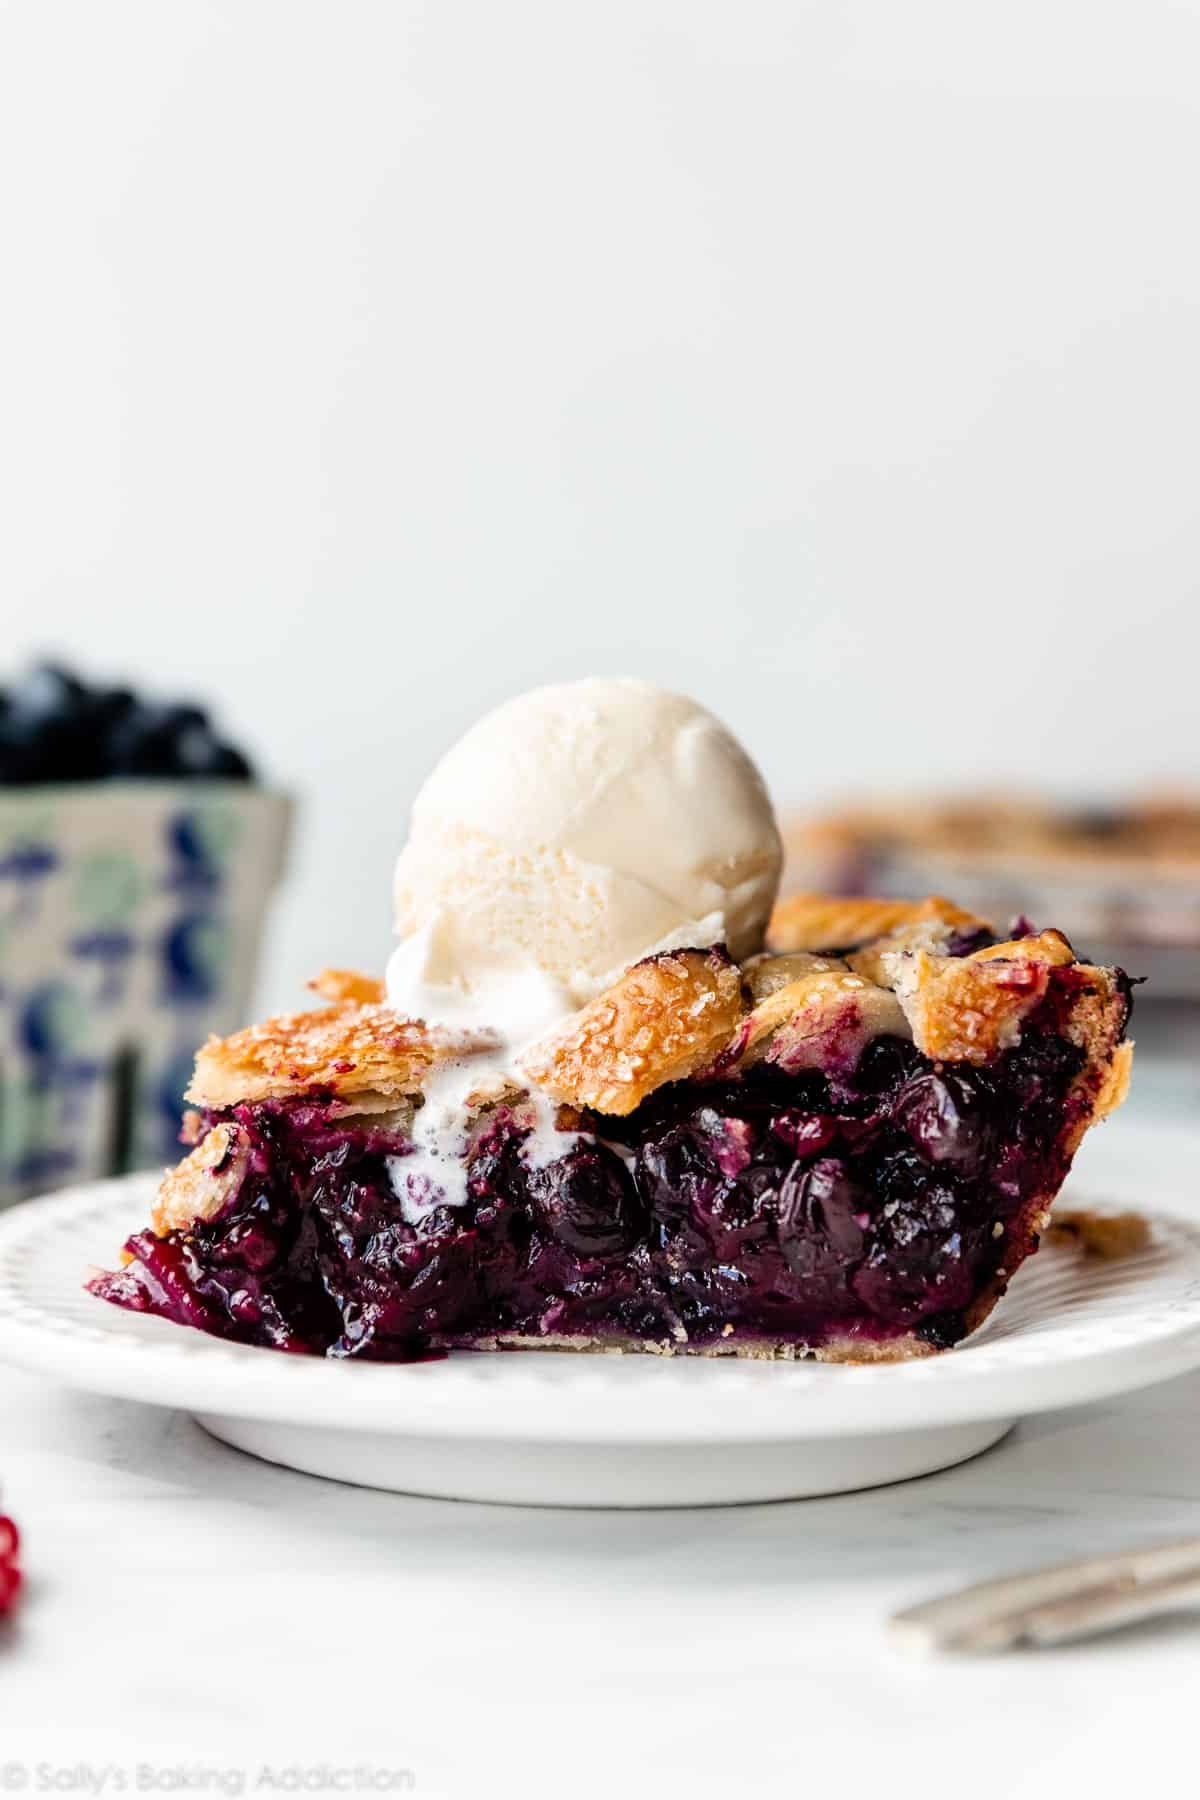 blueberry pie slice with vanilla ice cream on top.